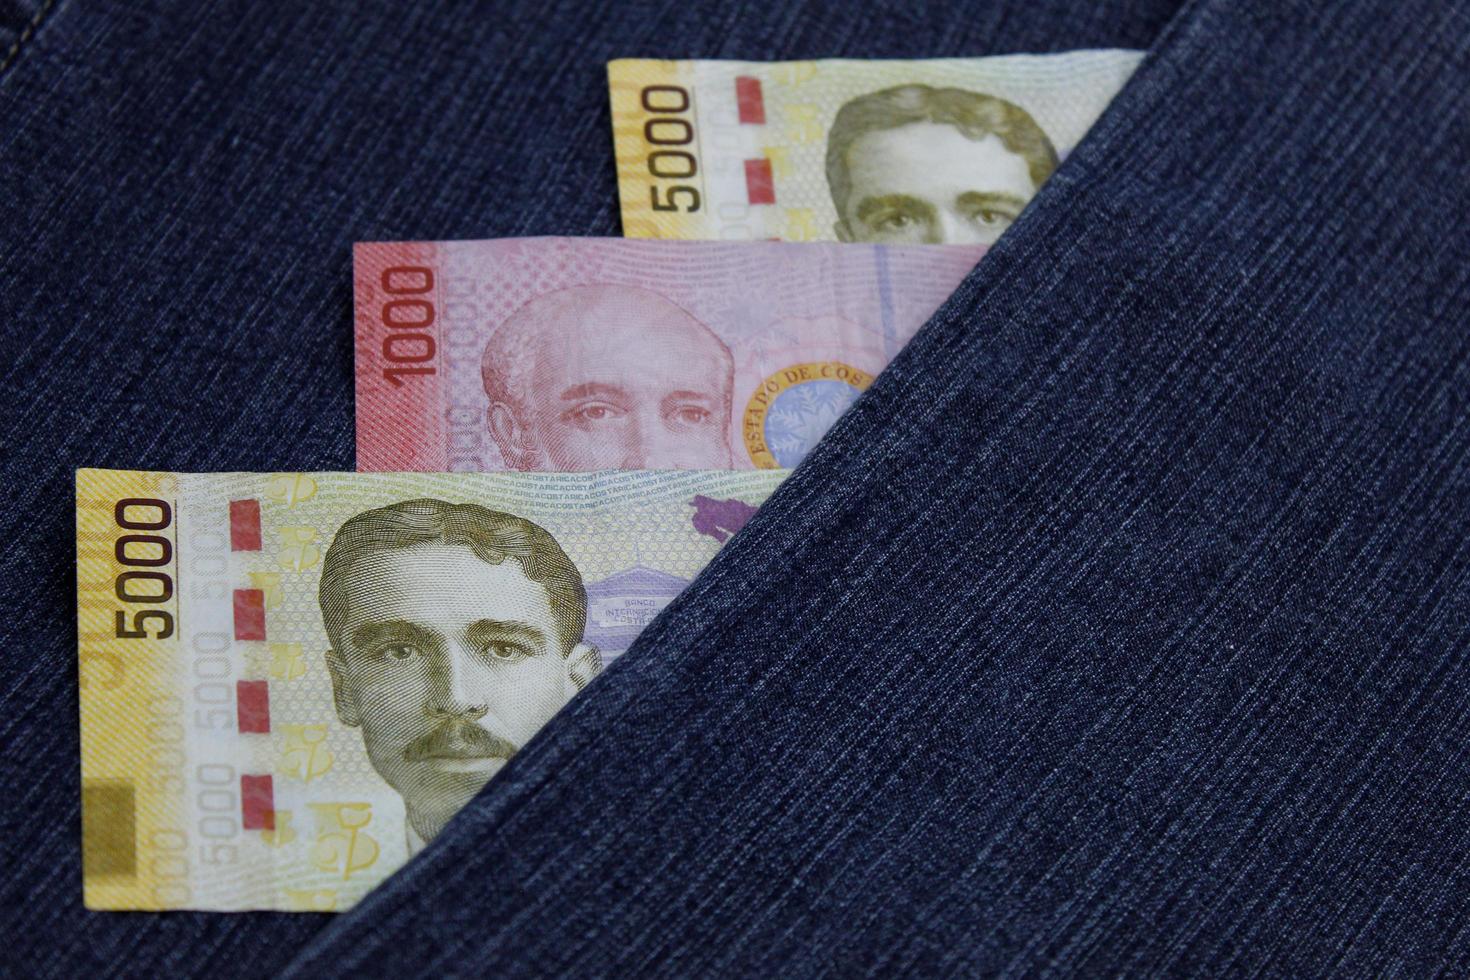 Billetes costarricenses apilados entre tela de mezclilla azul foto